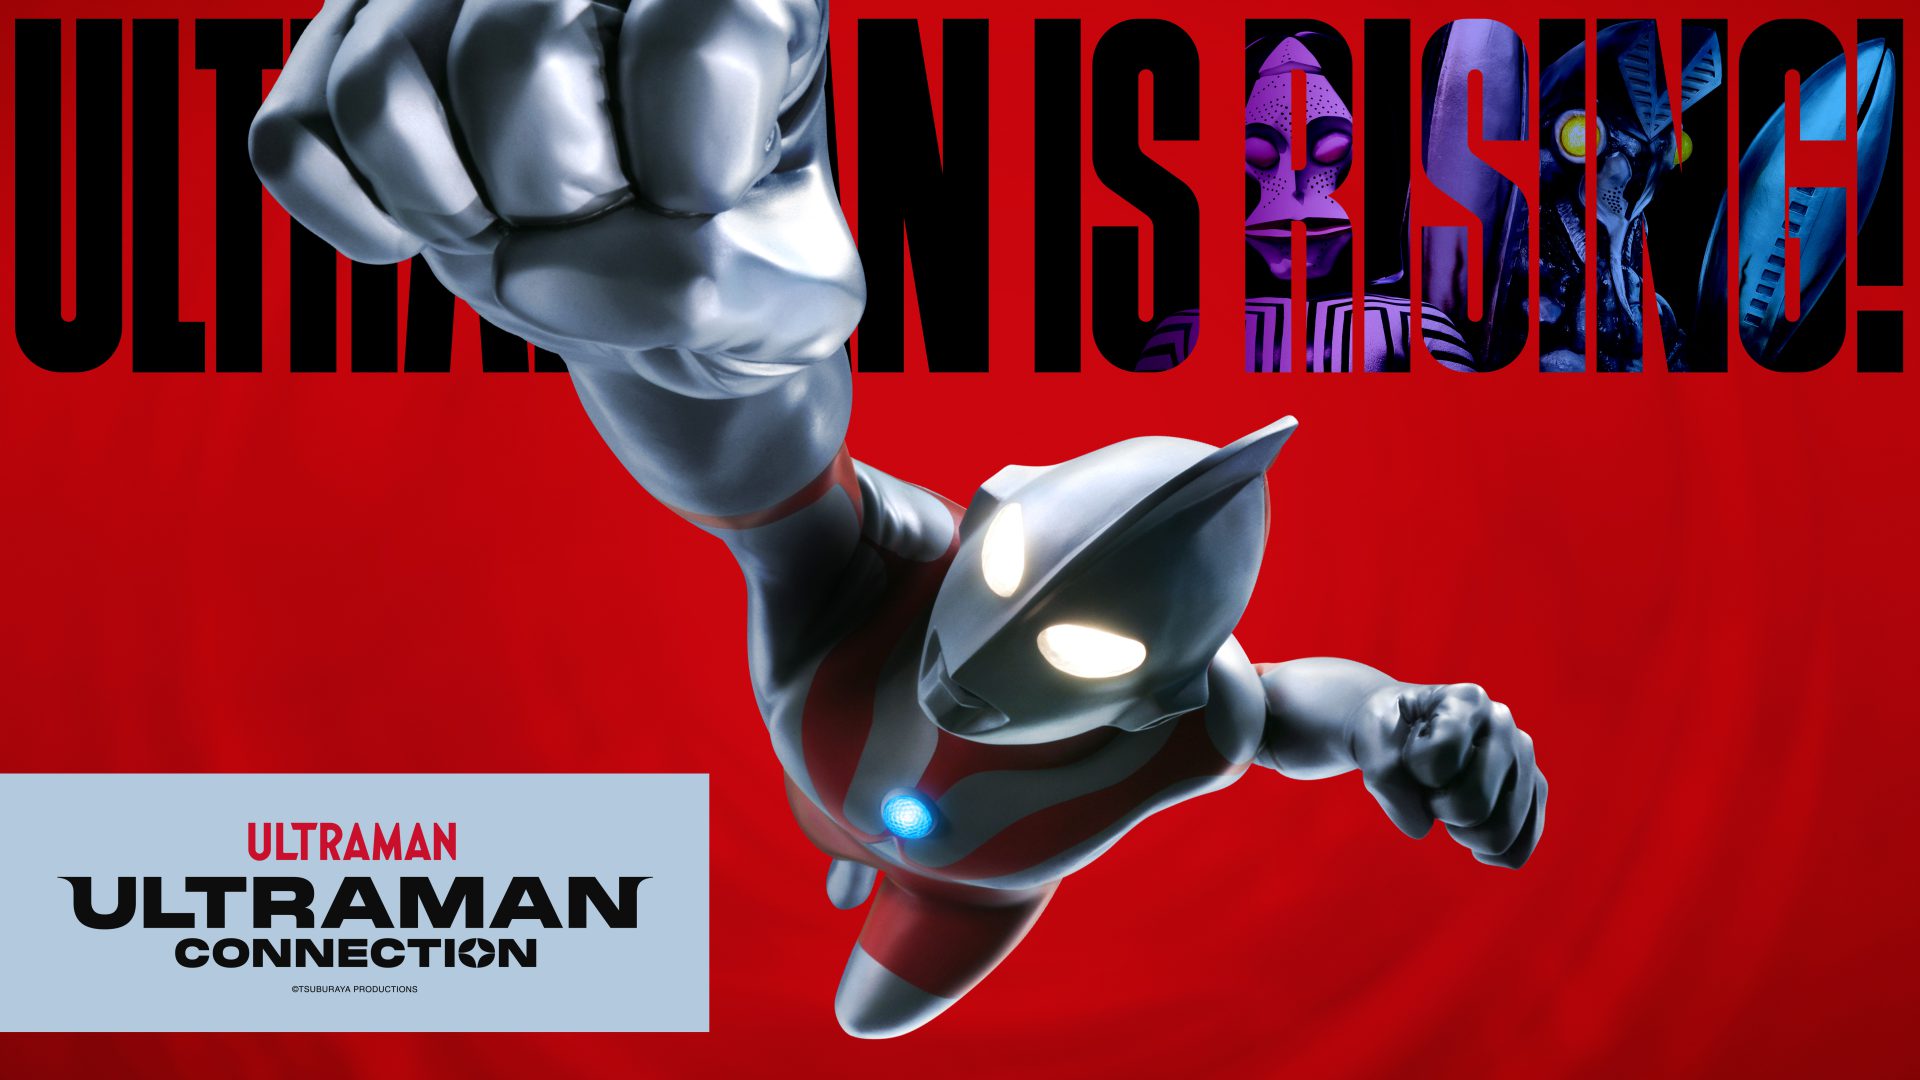 Ultraman sur un fond rouge avec un poing levé. Sur le fond, on peut lire 